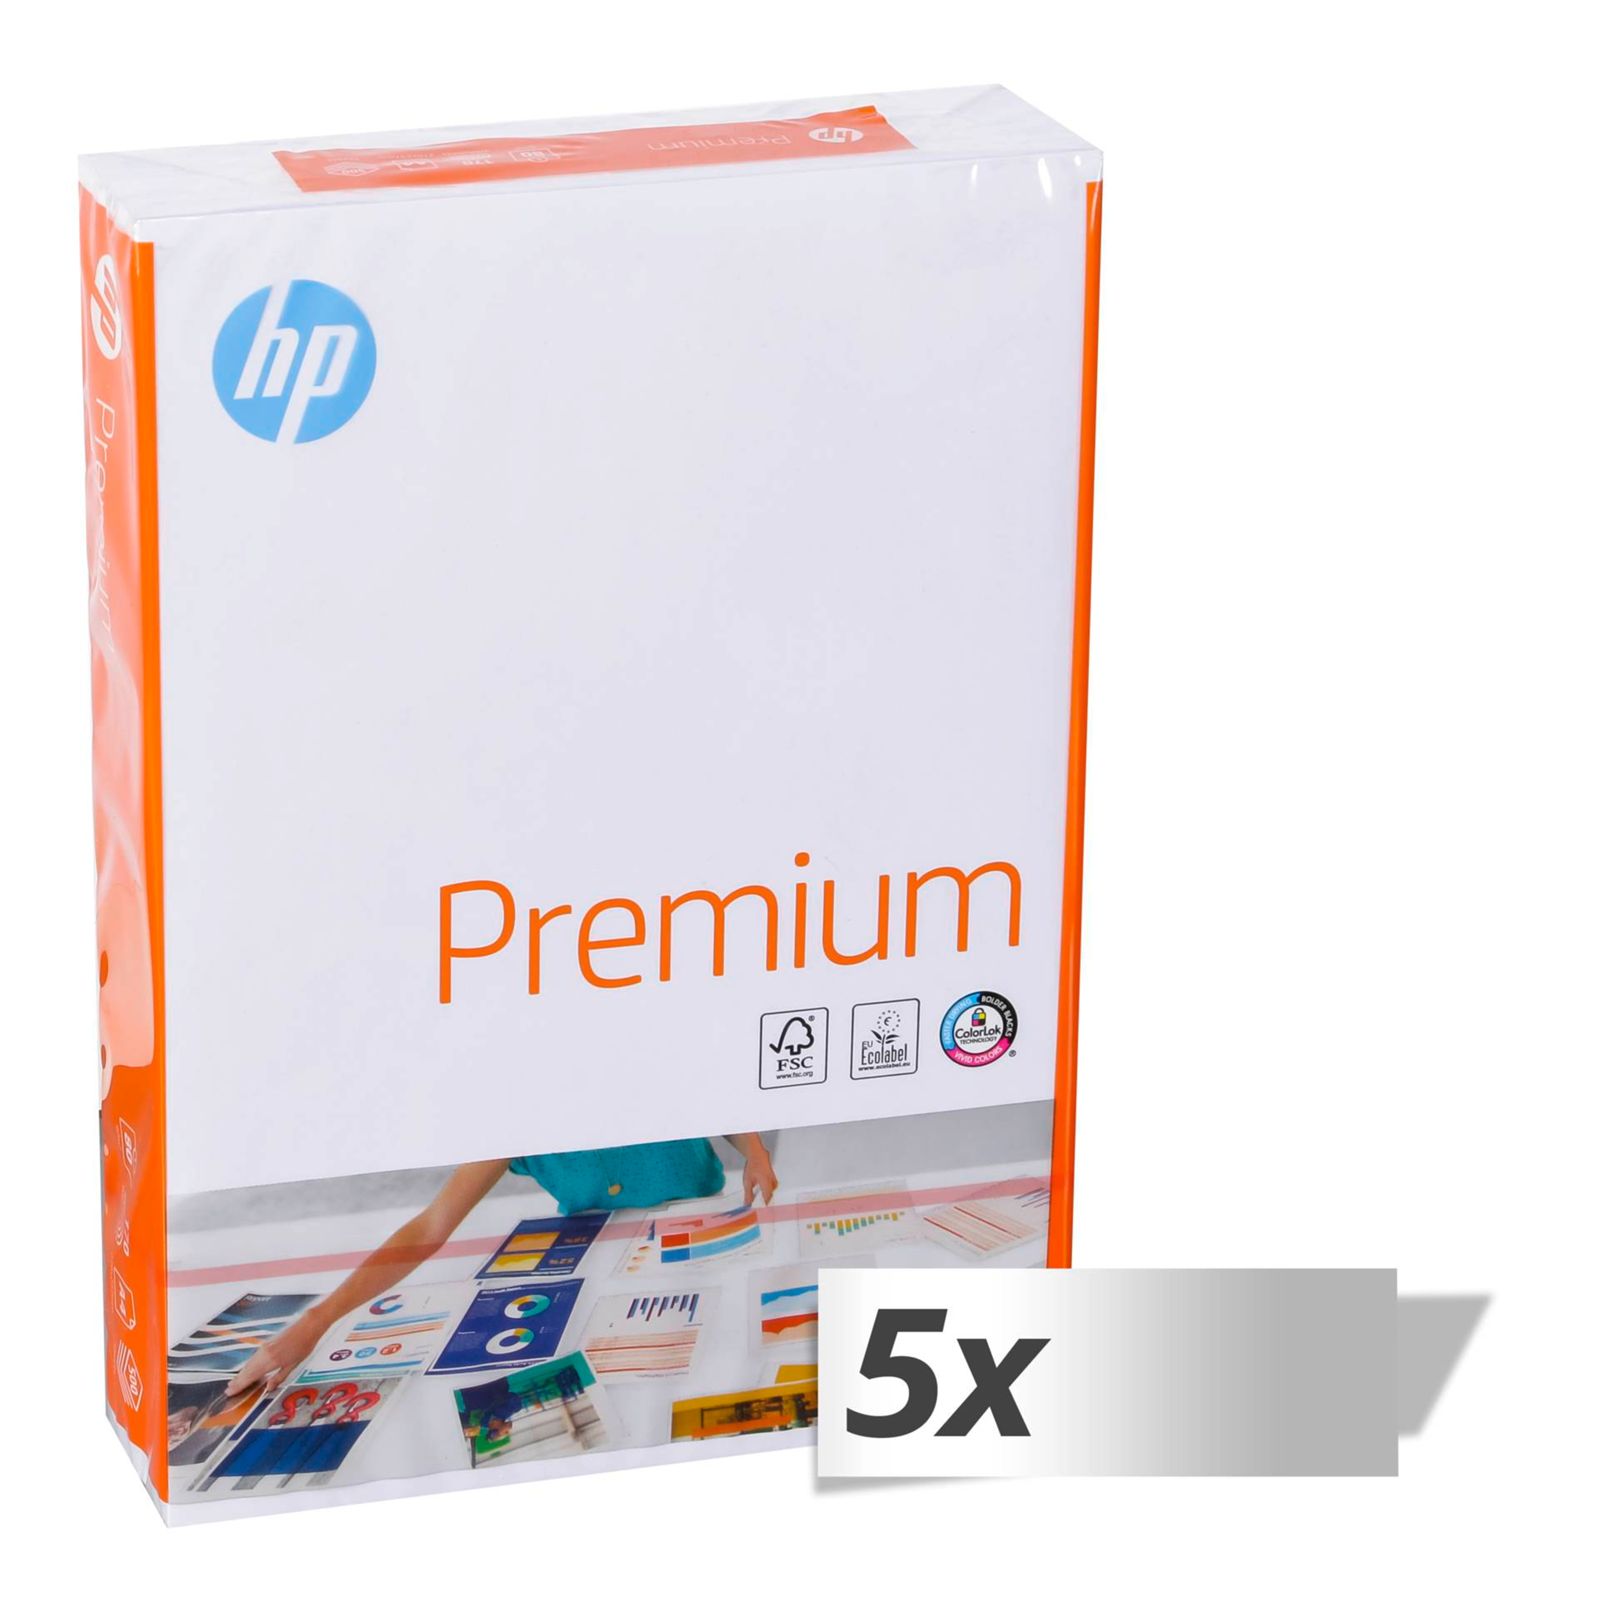 5x 500 p. HP Premium A 4, 80 g, CHP 850 (cartone)